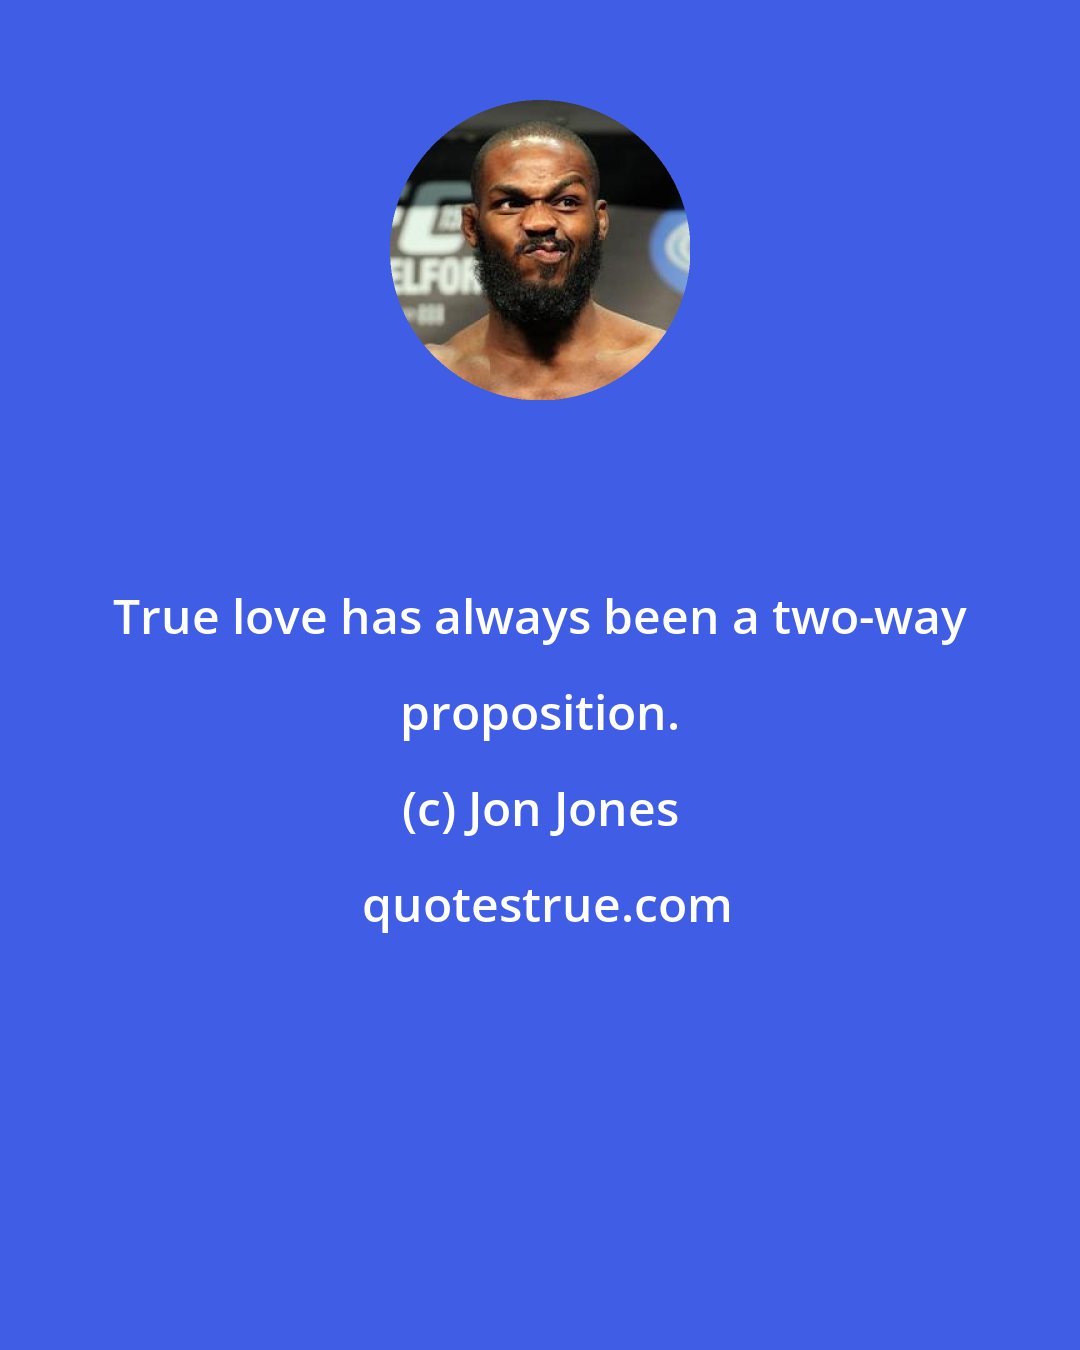 Jon Jones: True love has always been a two-way proposition.